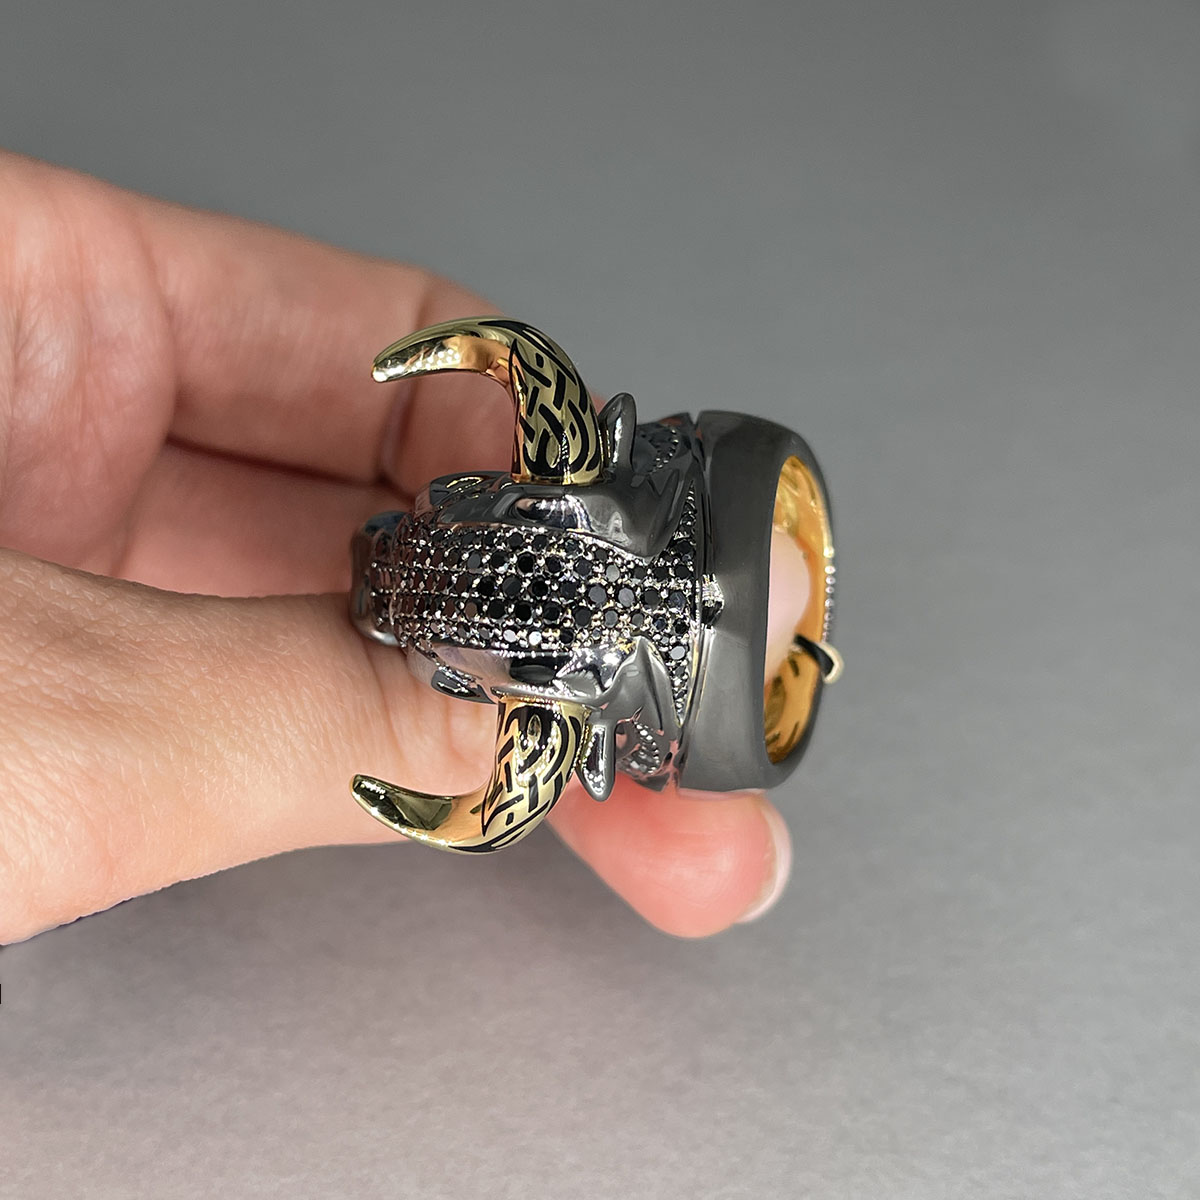 Мужское кольцо Бык с черными бриллиантами и рубинами в желтом золоте 750 пробы, фото № 5